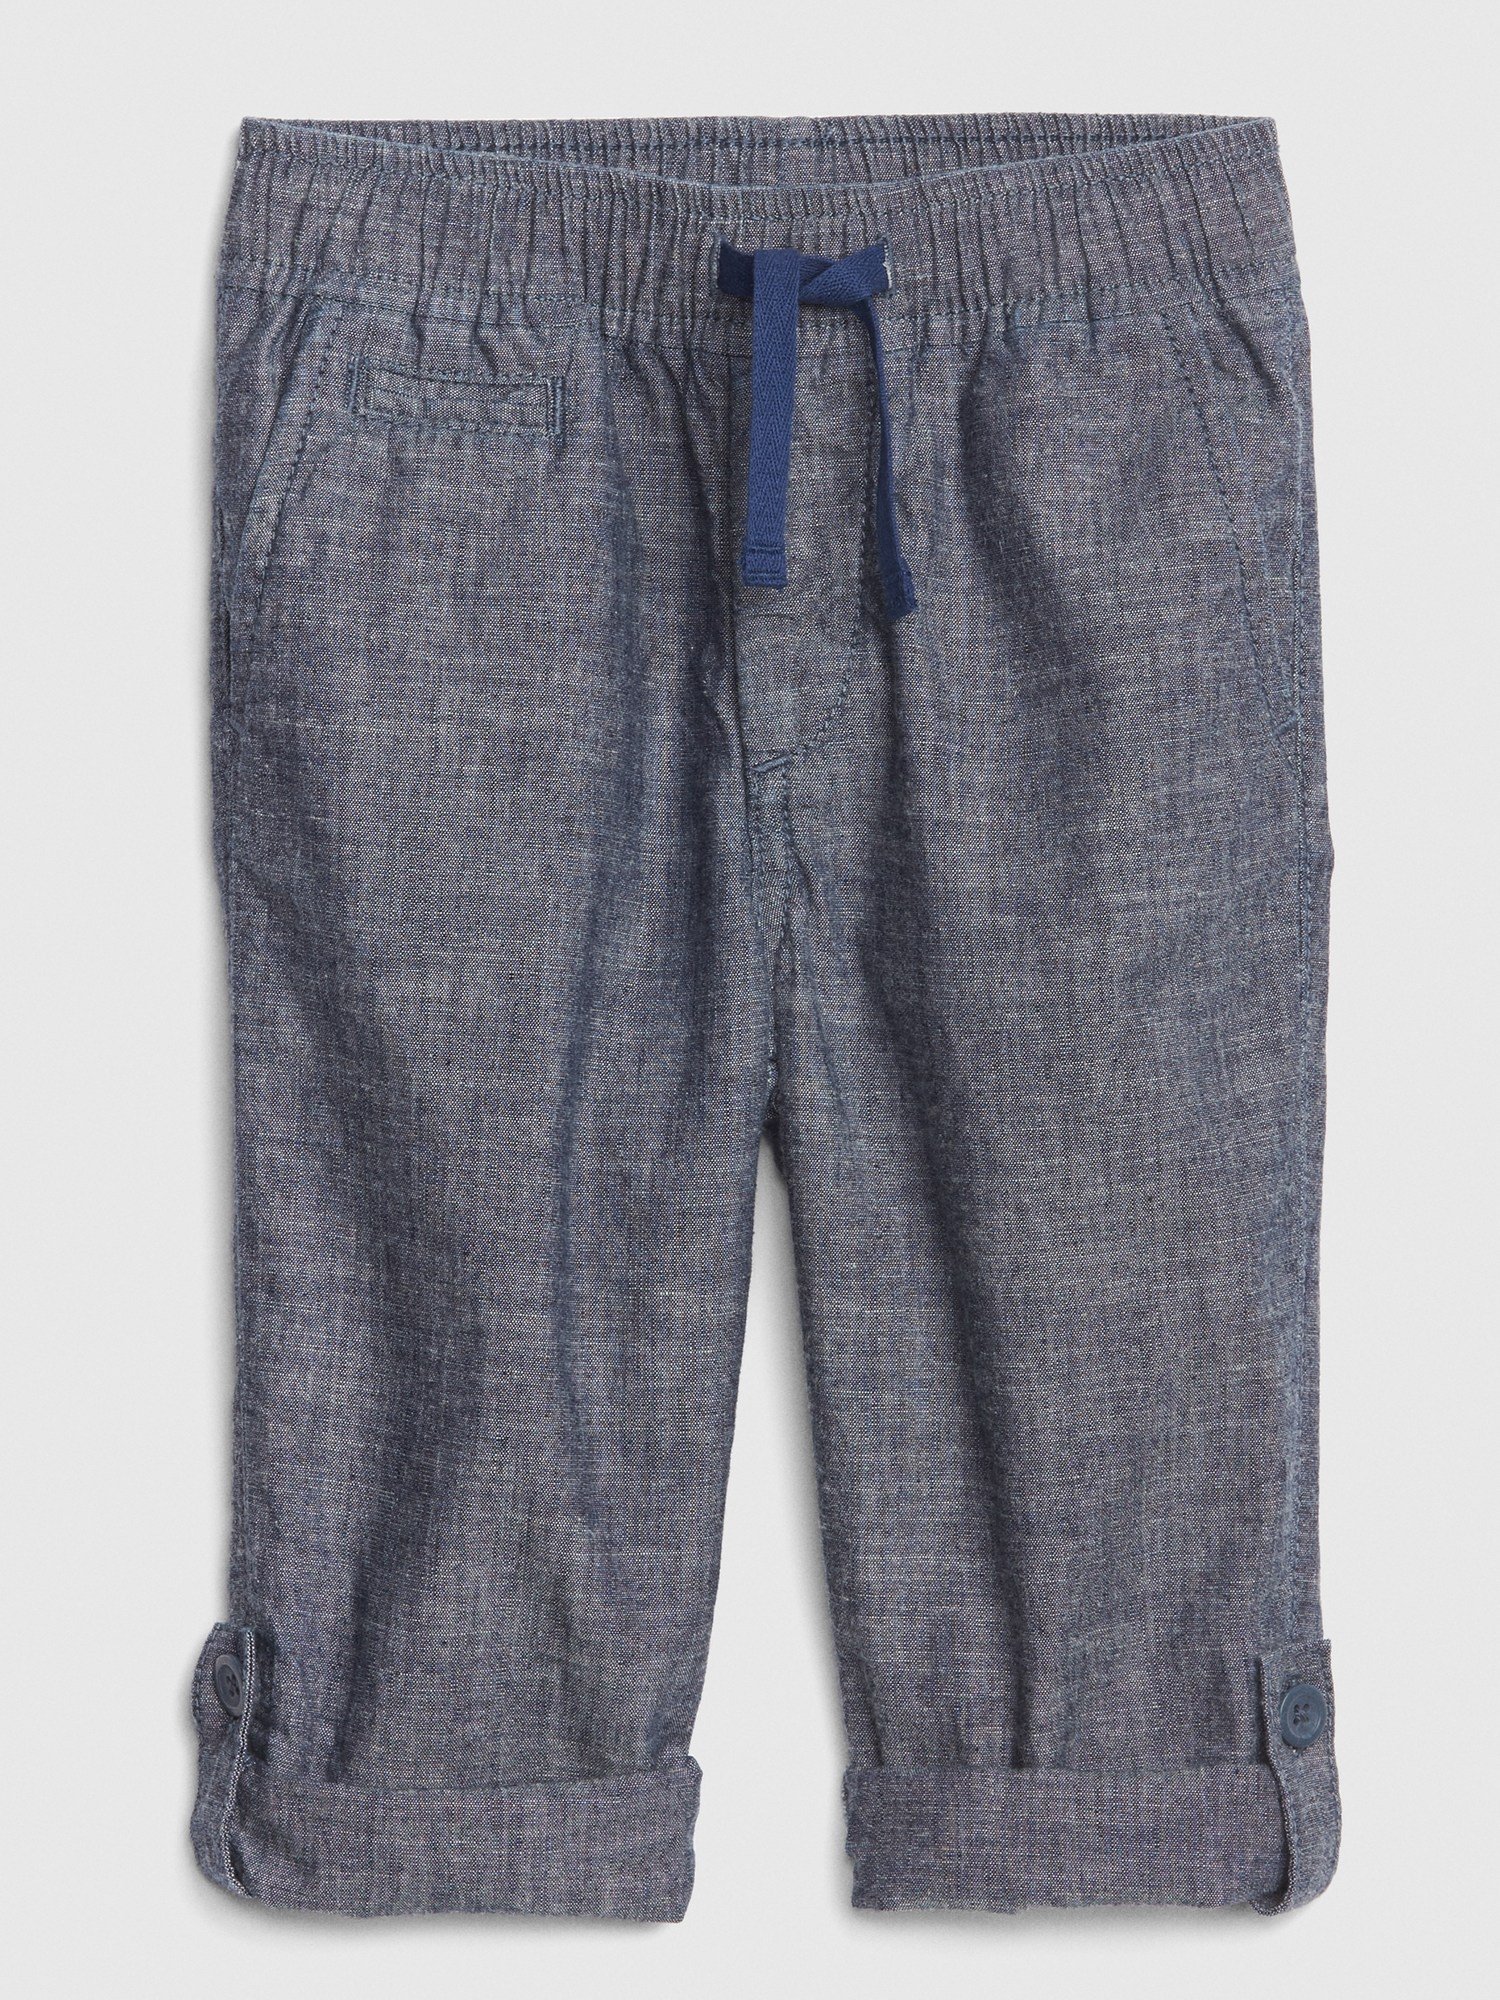 Lastik Belli Pantolon product image